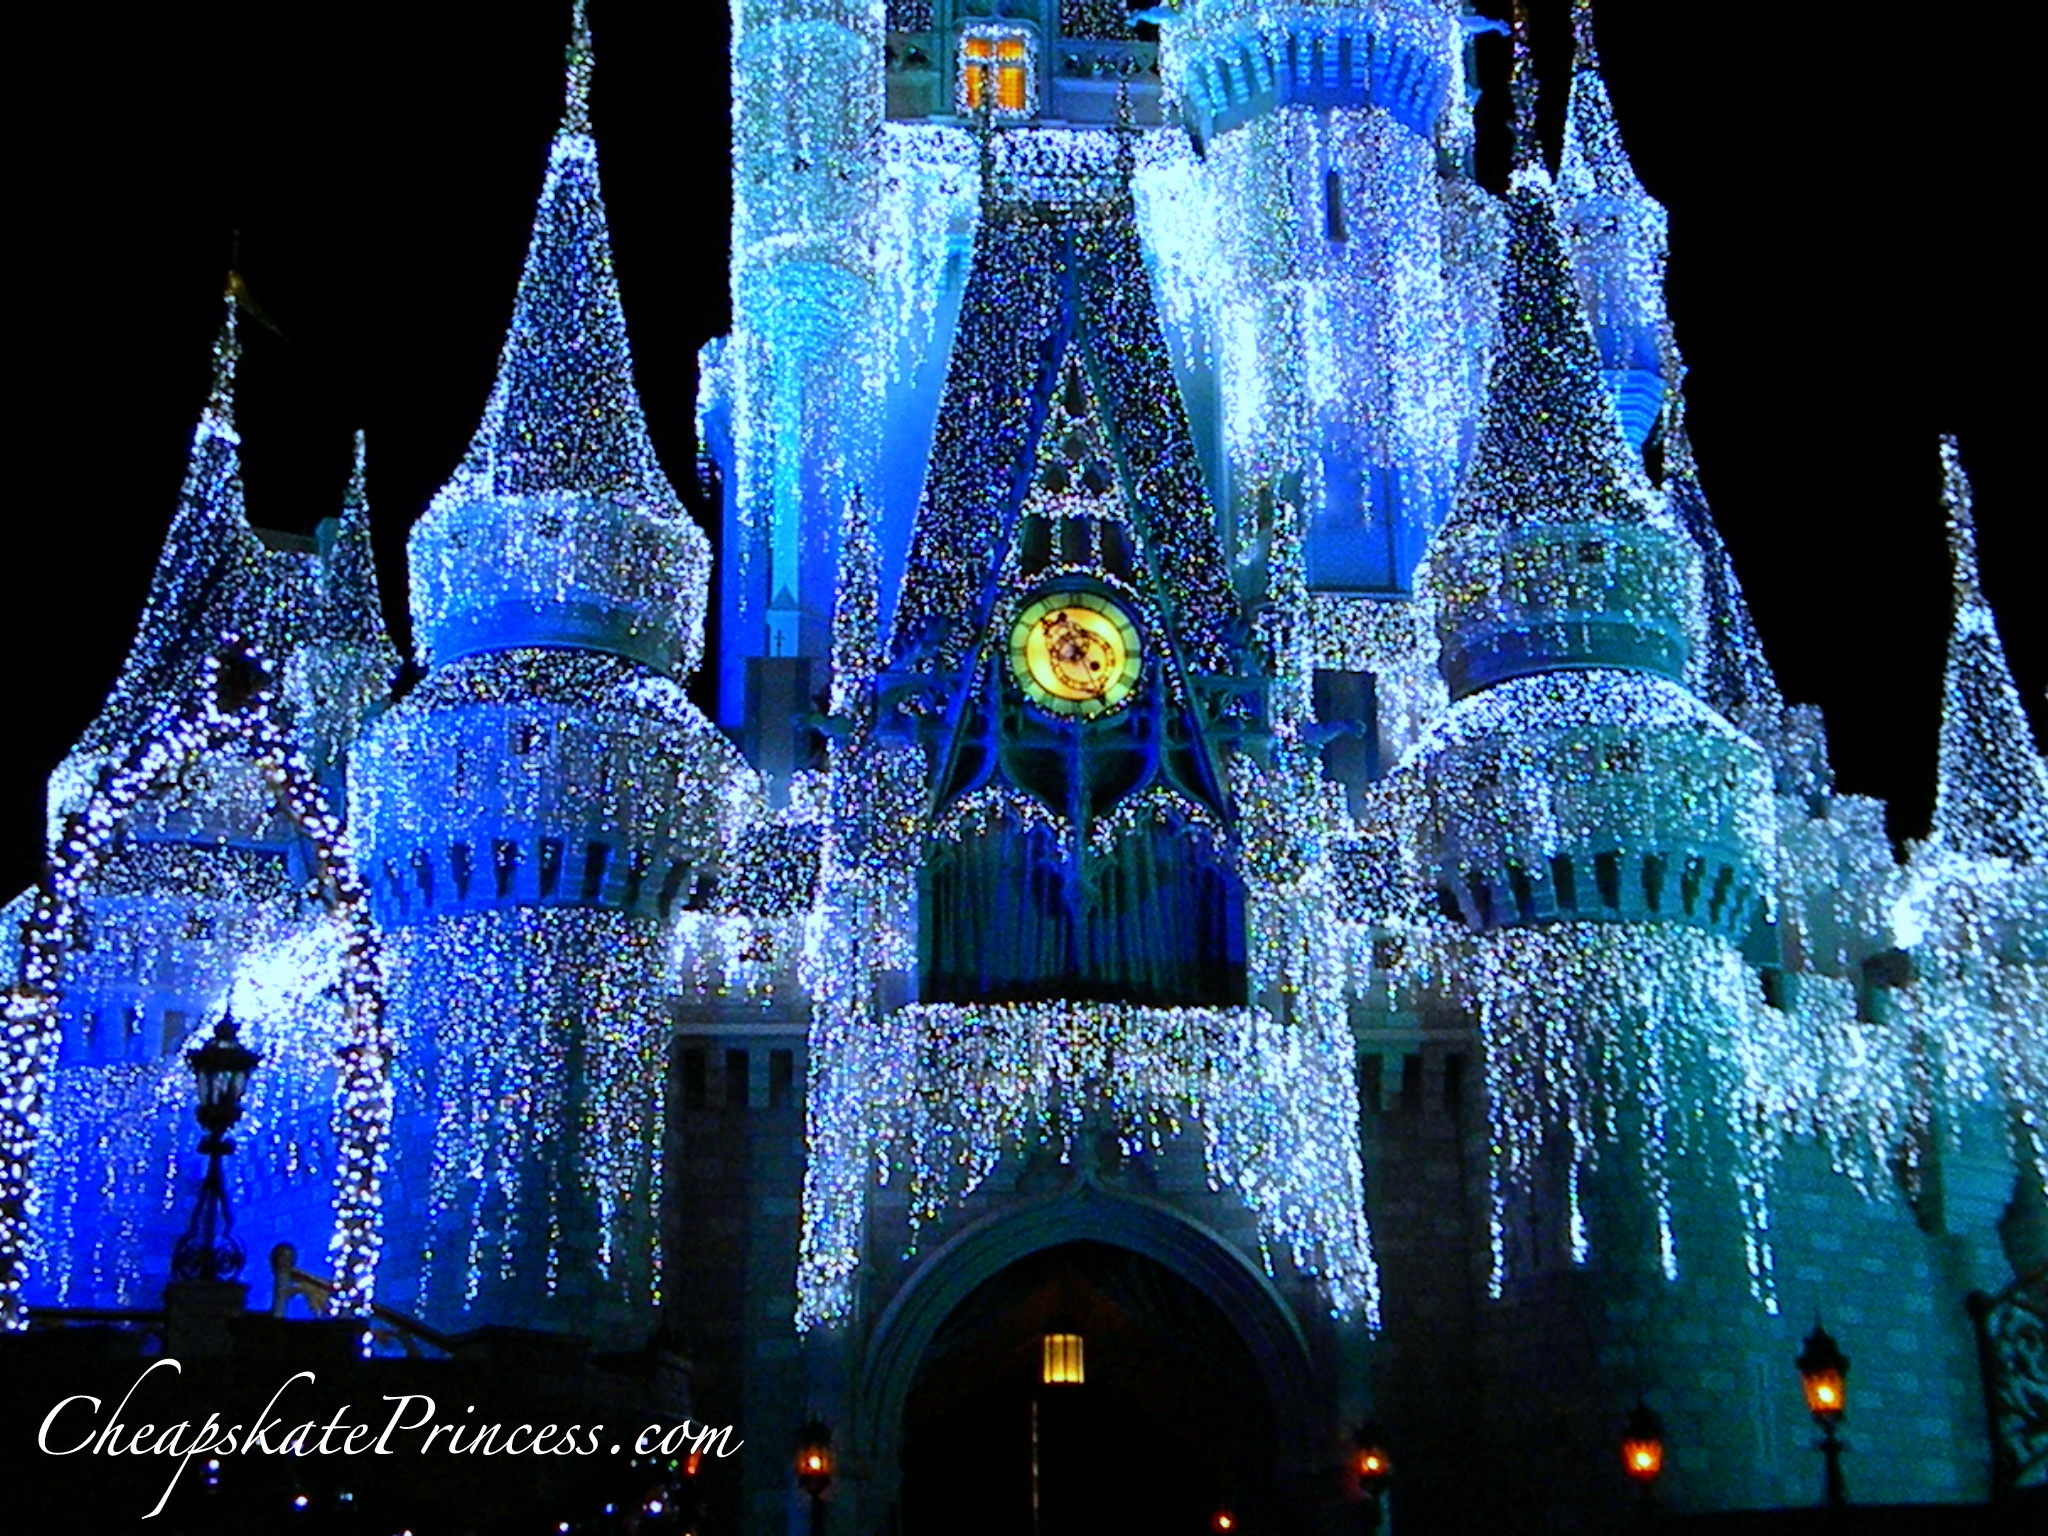 Castle Dreamlights, Lights On Cinderella Castle, Cinderella - Disney World, Cinderella Castle - HD Wallpaper 